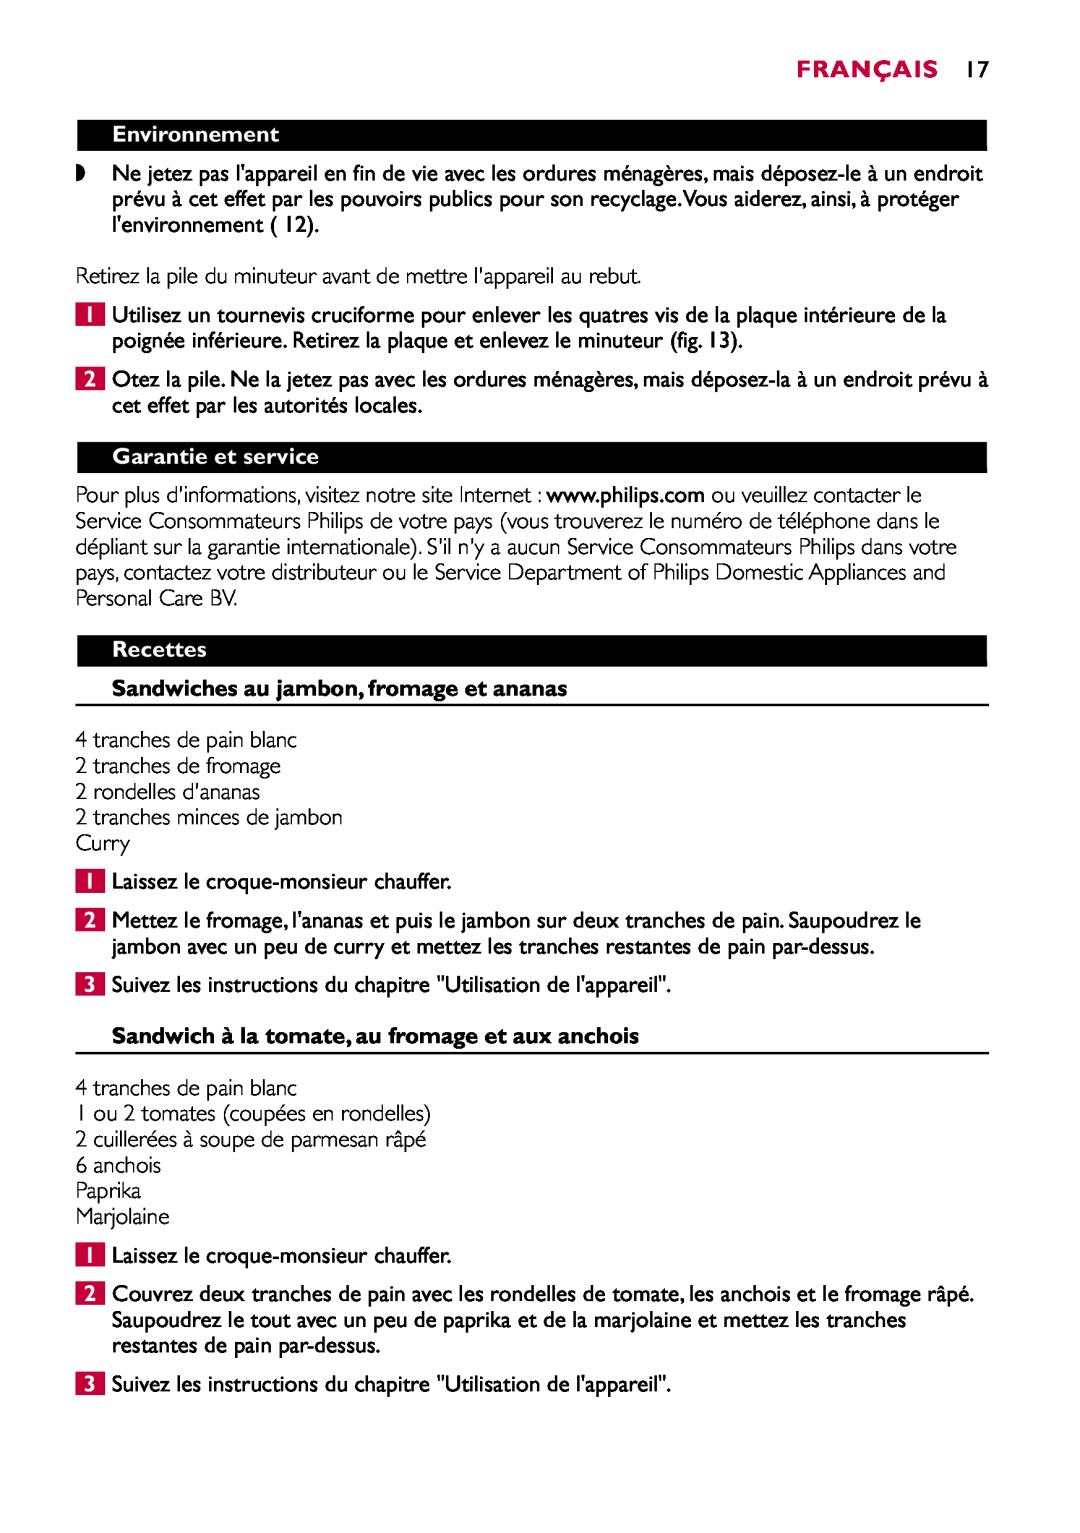 Philips HD2415 manual Environnement, Garantie et service, Recettes, Sandwiches au jambon, fromage et ananas, Français 